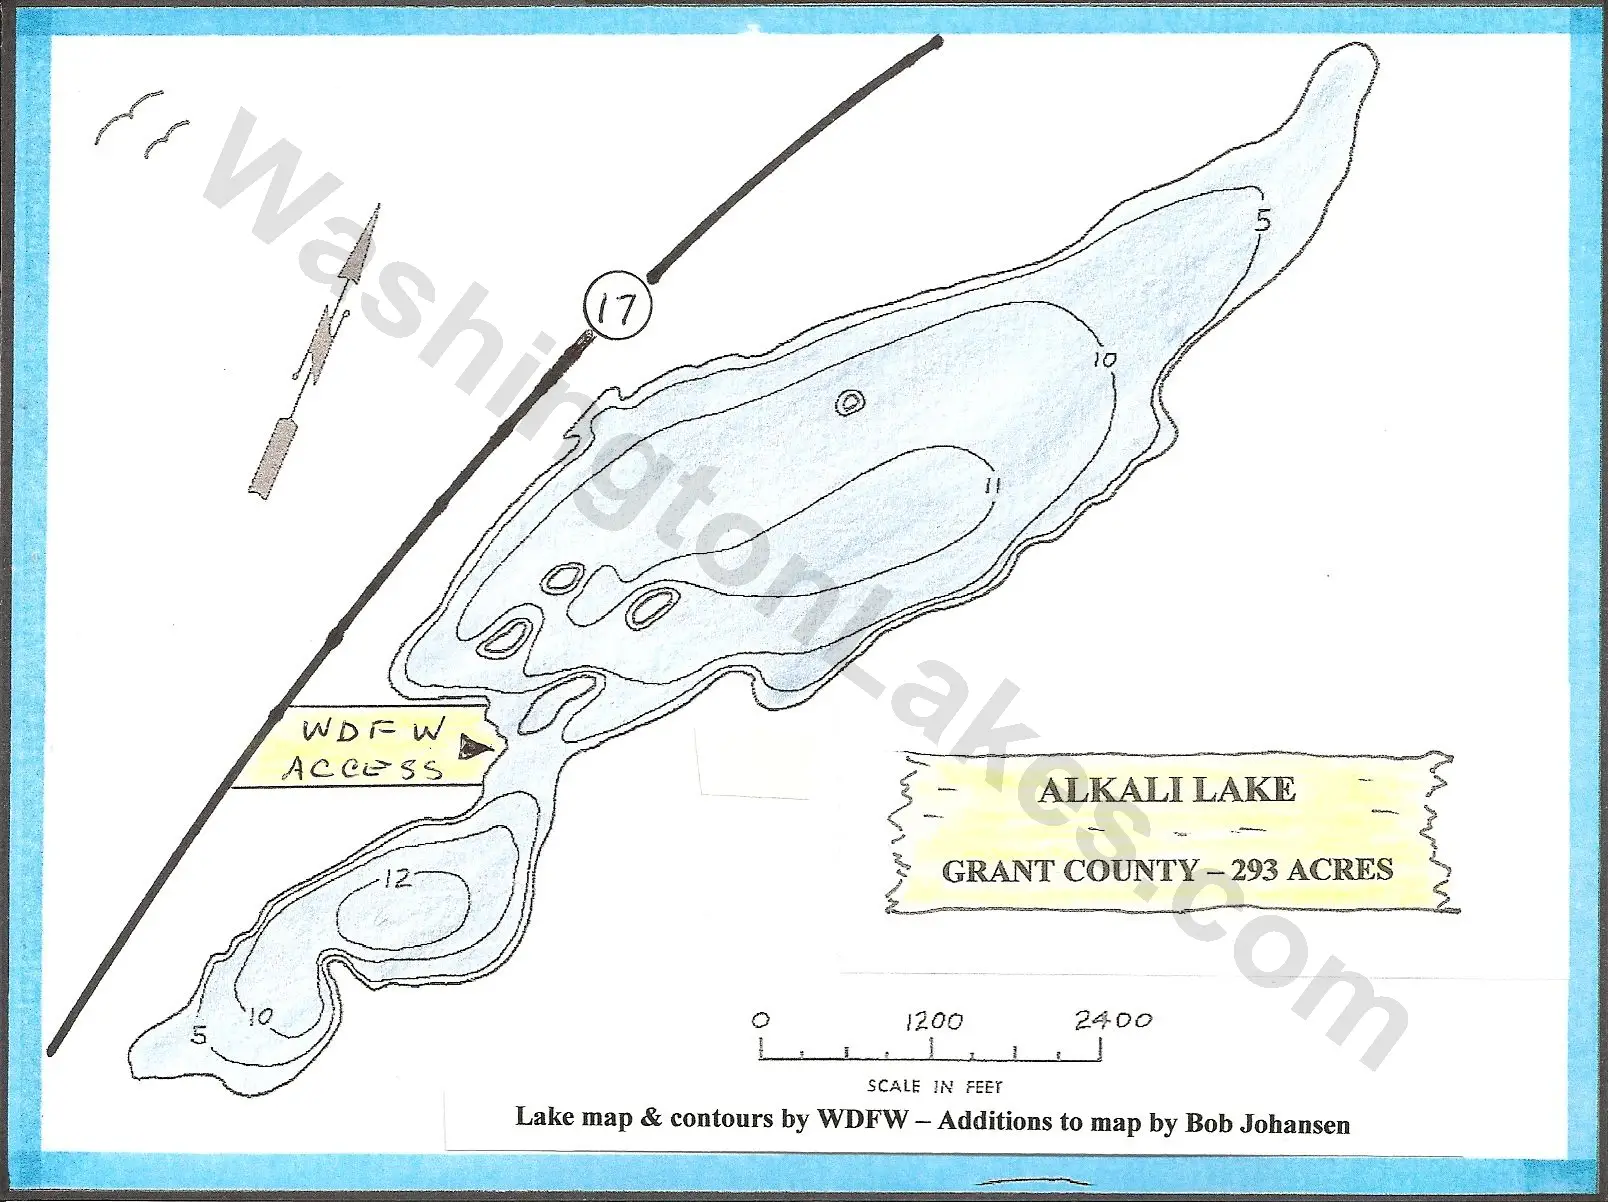 Baker Lake Depth Chart